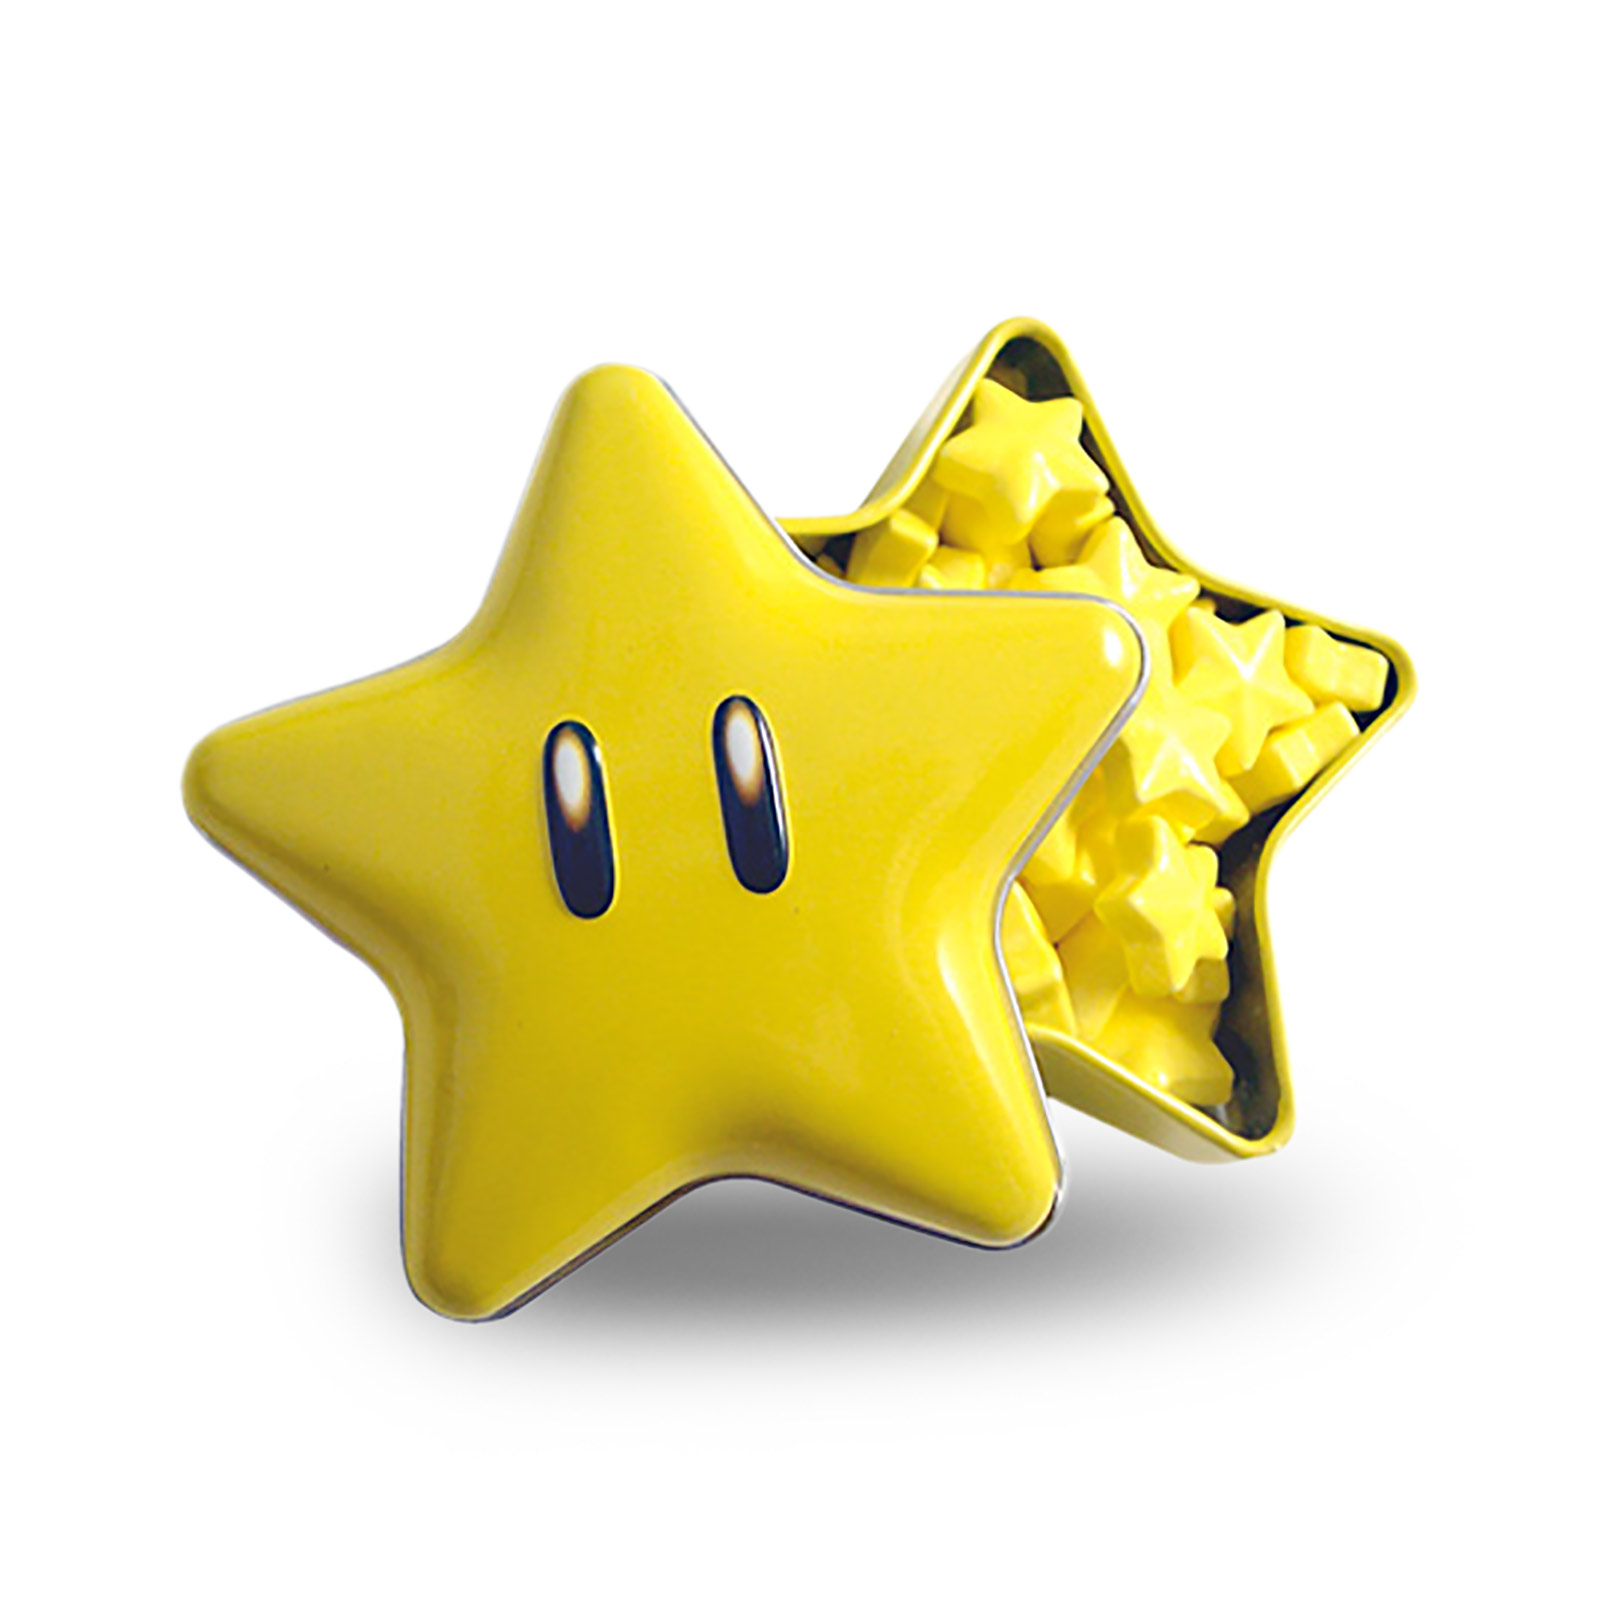 Super Mario - Star Power Candies